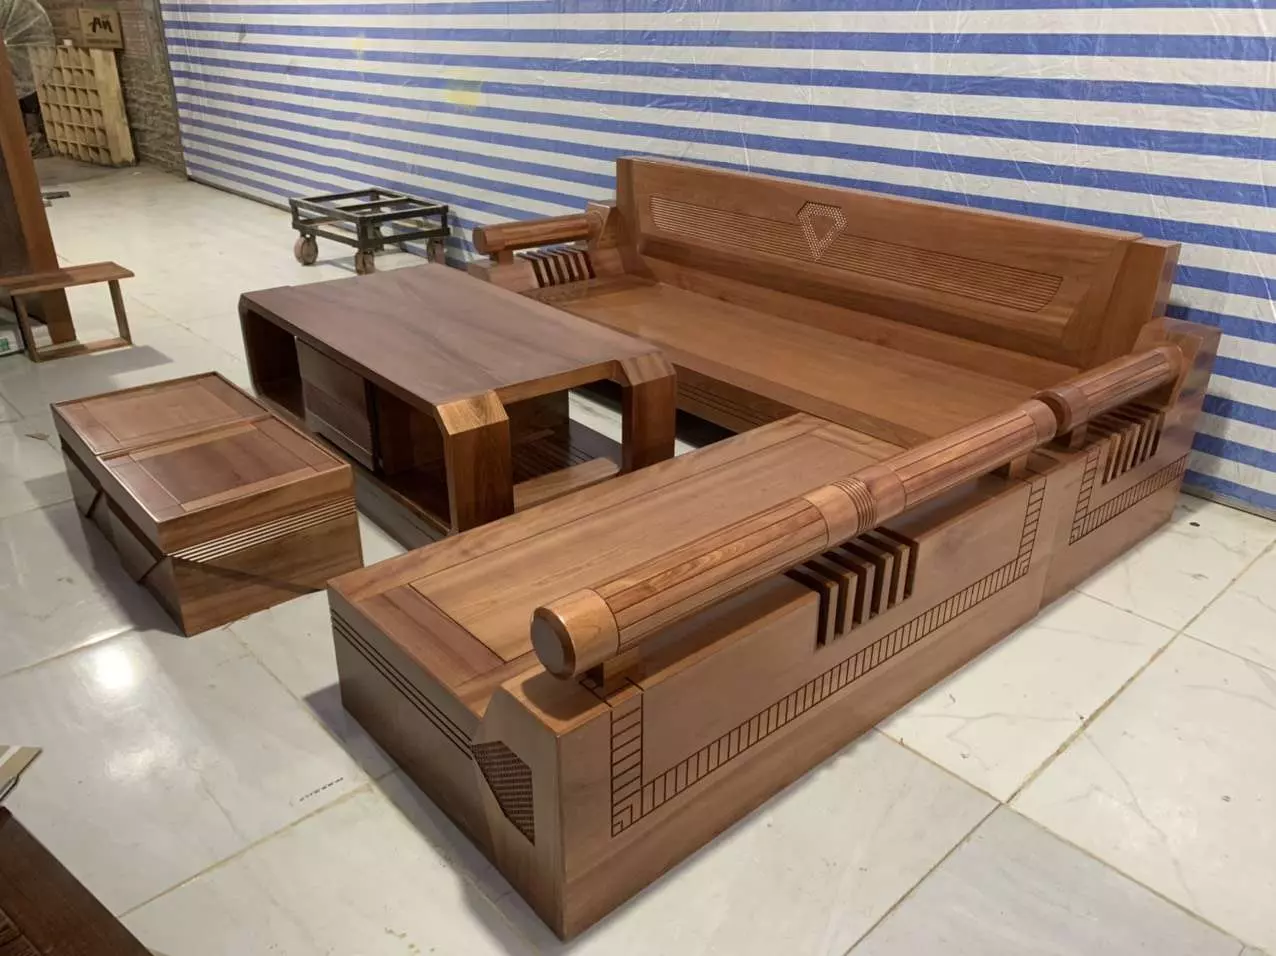 Bàn ghế sofa gỗ Chiu Liu là sự kết hợp giữa nét cổ điển và hiện đại, tạo nên không gian sang trọng và đẳng cấp